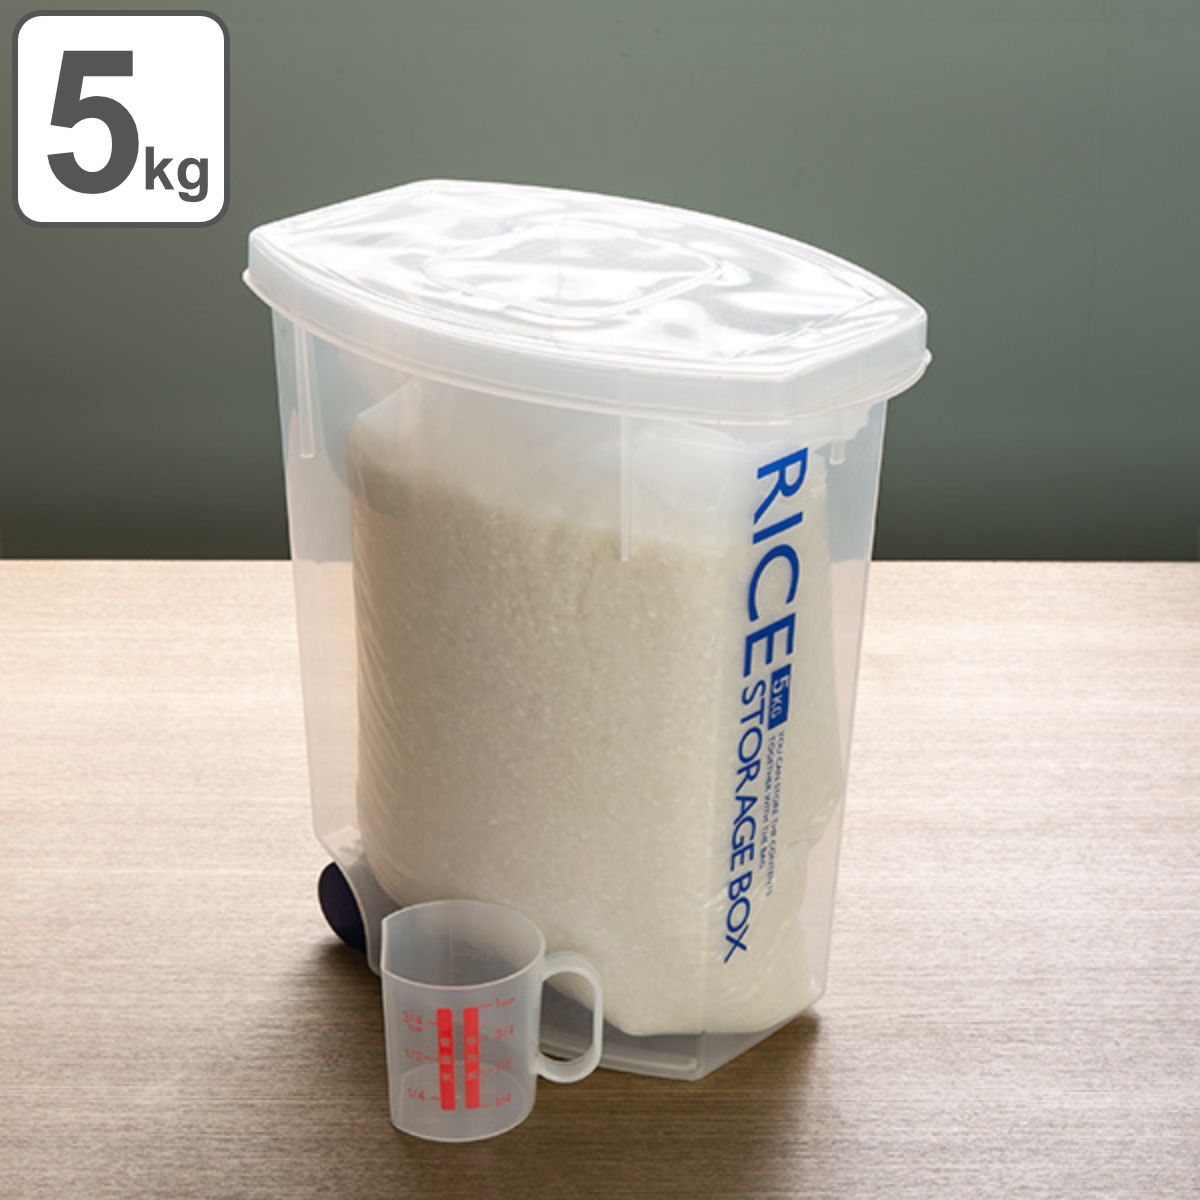 米びつ 袋のまんま防虫米びつ 5kg 計量カップ付 防虫剤付き （ ライスボックス 米櫃 こめびつ おすすめ ）